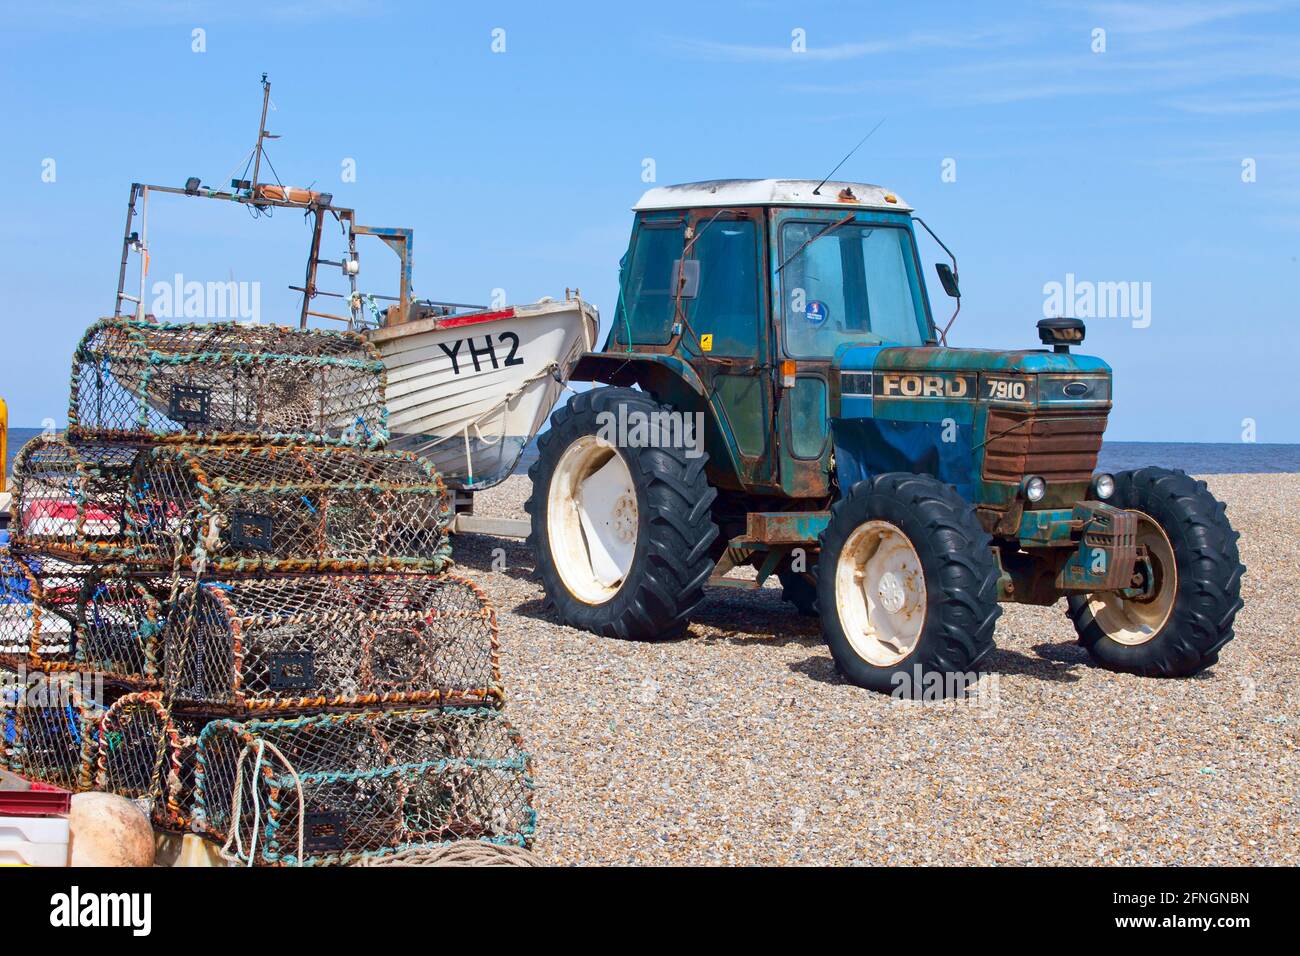 Pentole di aragosta sulla spiaggia di ciottoli con trattore ford e barca da pesca Foto Stock